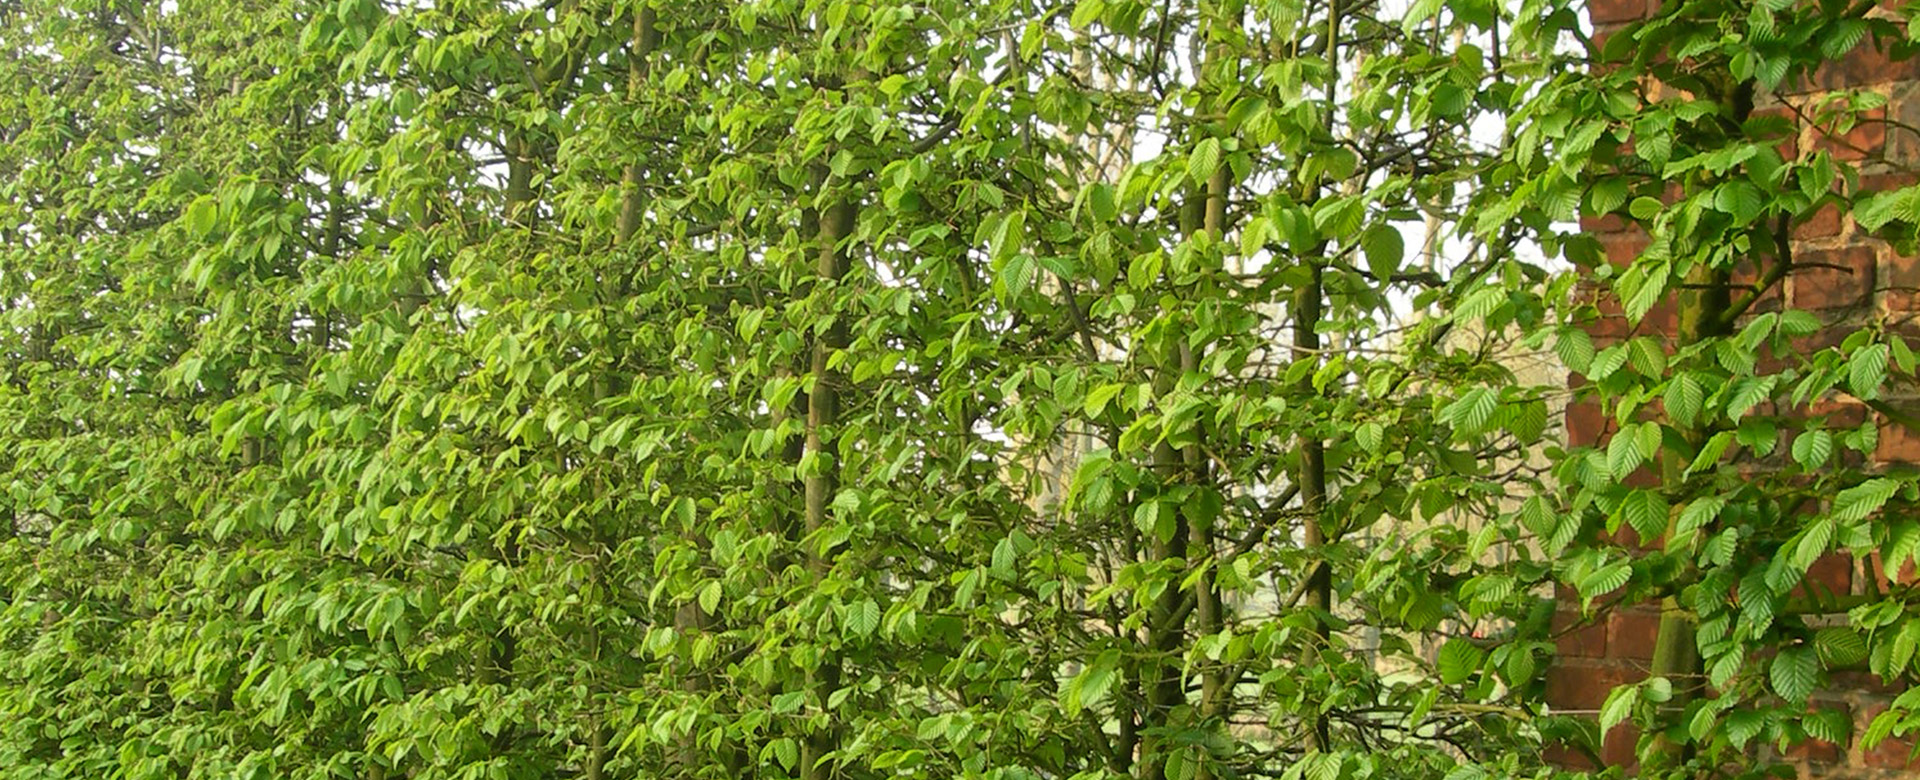 Tuinafsluiting met groene hagen.